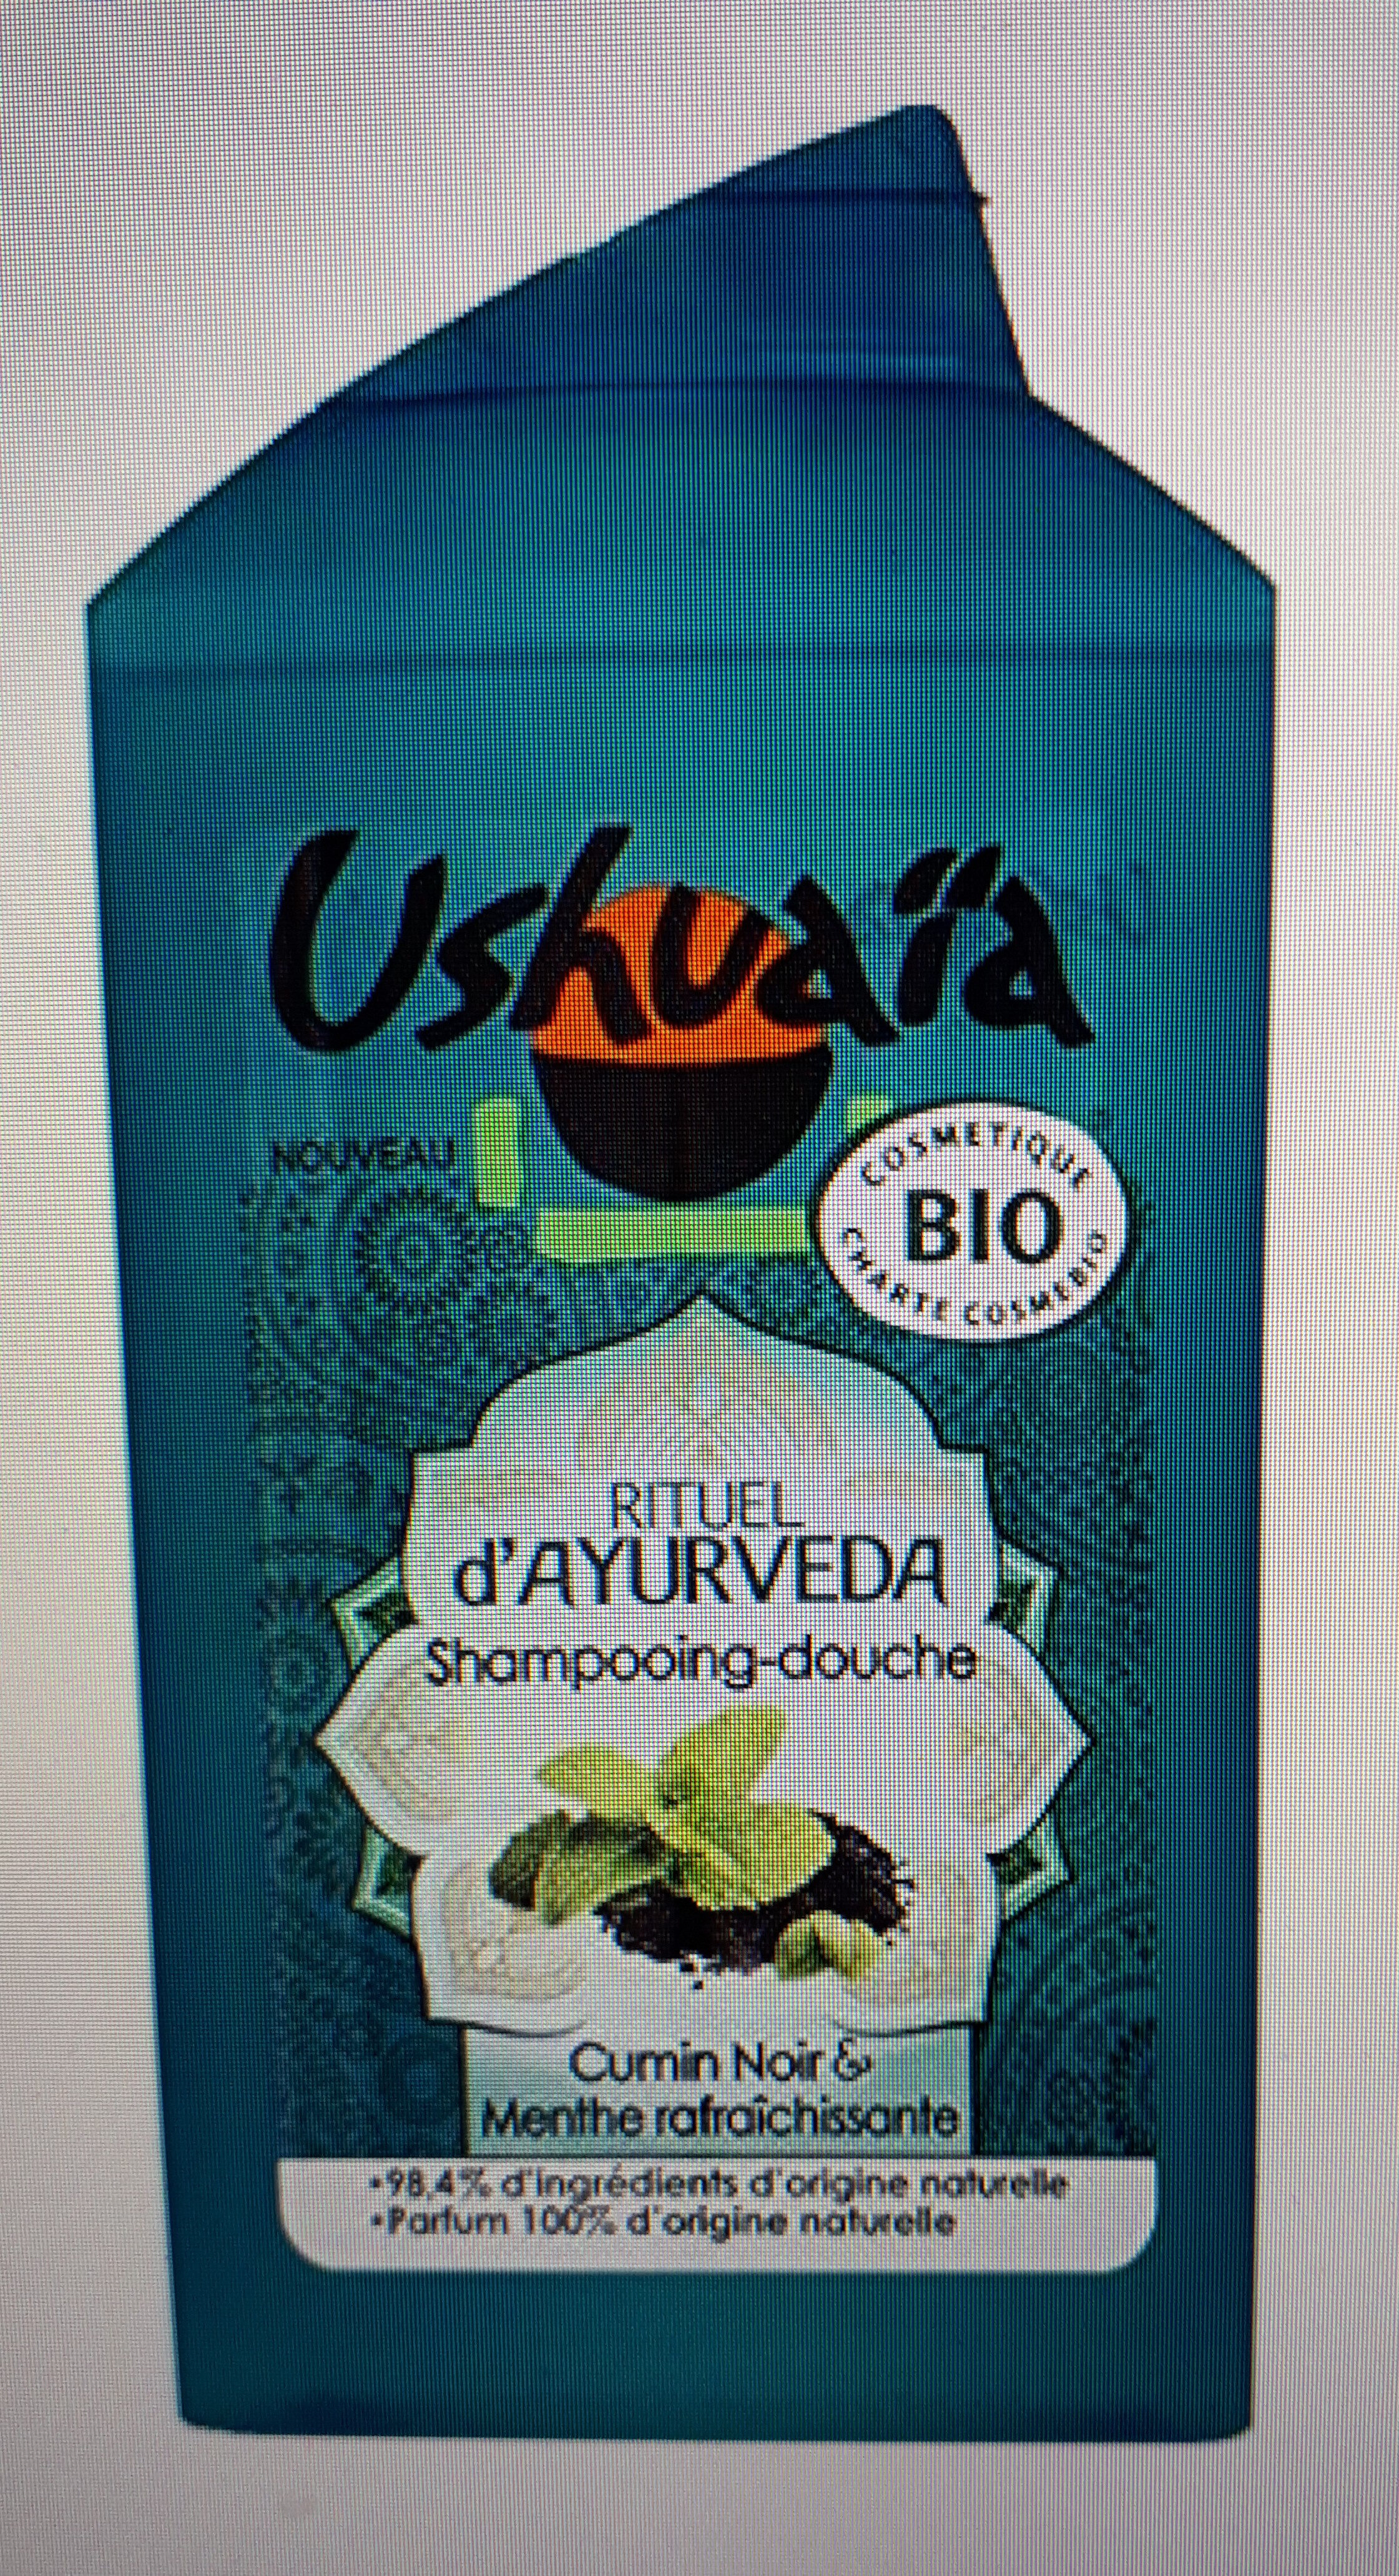 Rituel d'Ayurveda shampooing-douche - Produkt - fr